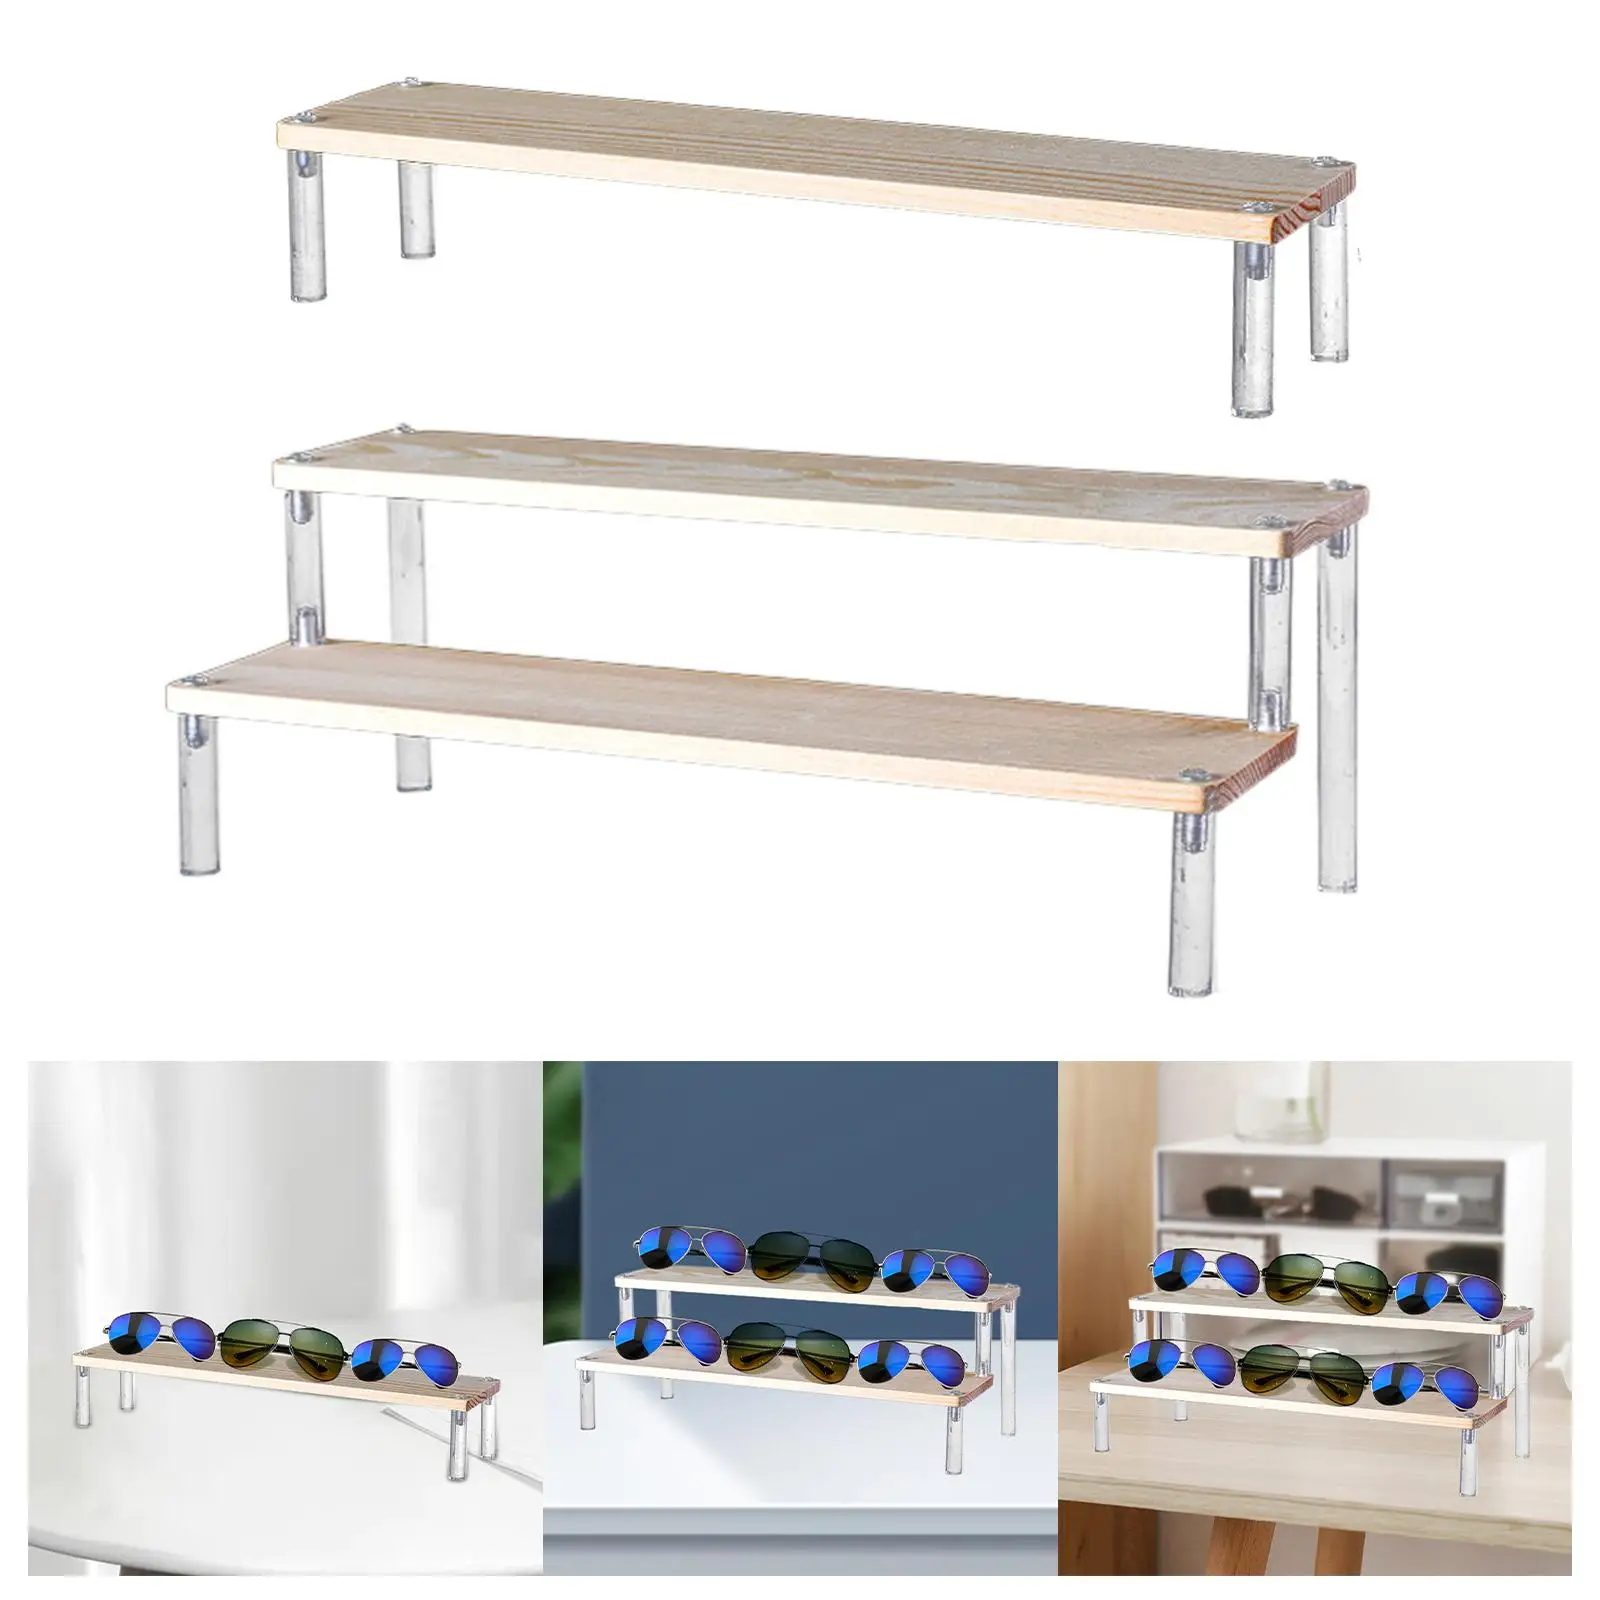 DIY Action Figures Display Shelf Holder Desktop Decoration and Organizer, Space Saver for Table, Kitchen, Shop